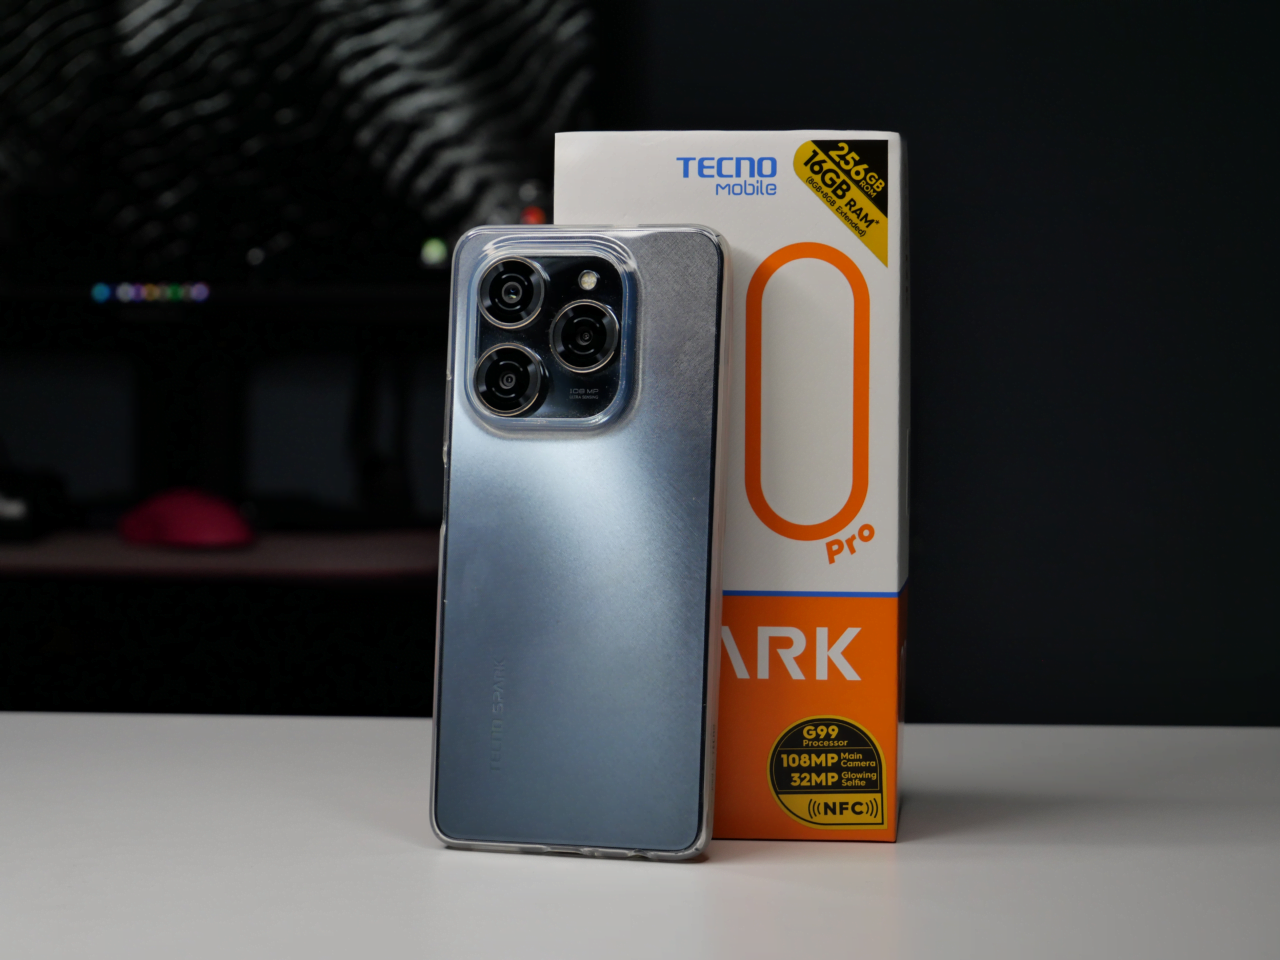 Smartfon TECNO SPARK 8 Pro oparty na tyle obudowy, z zestawem potrójnych aparatów, obok pudełka produktowego z napisami o charakterystyce technicznej, w tle rozmazane biurko z ciemnymi odcieniami.